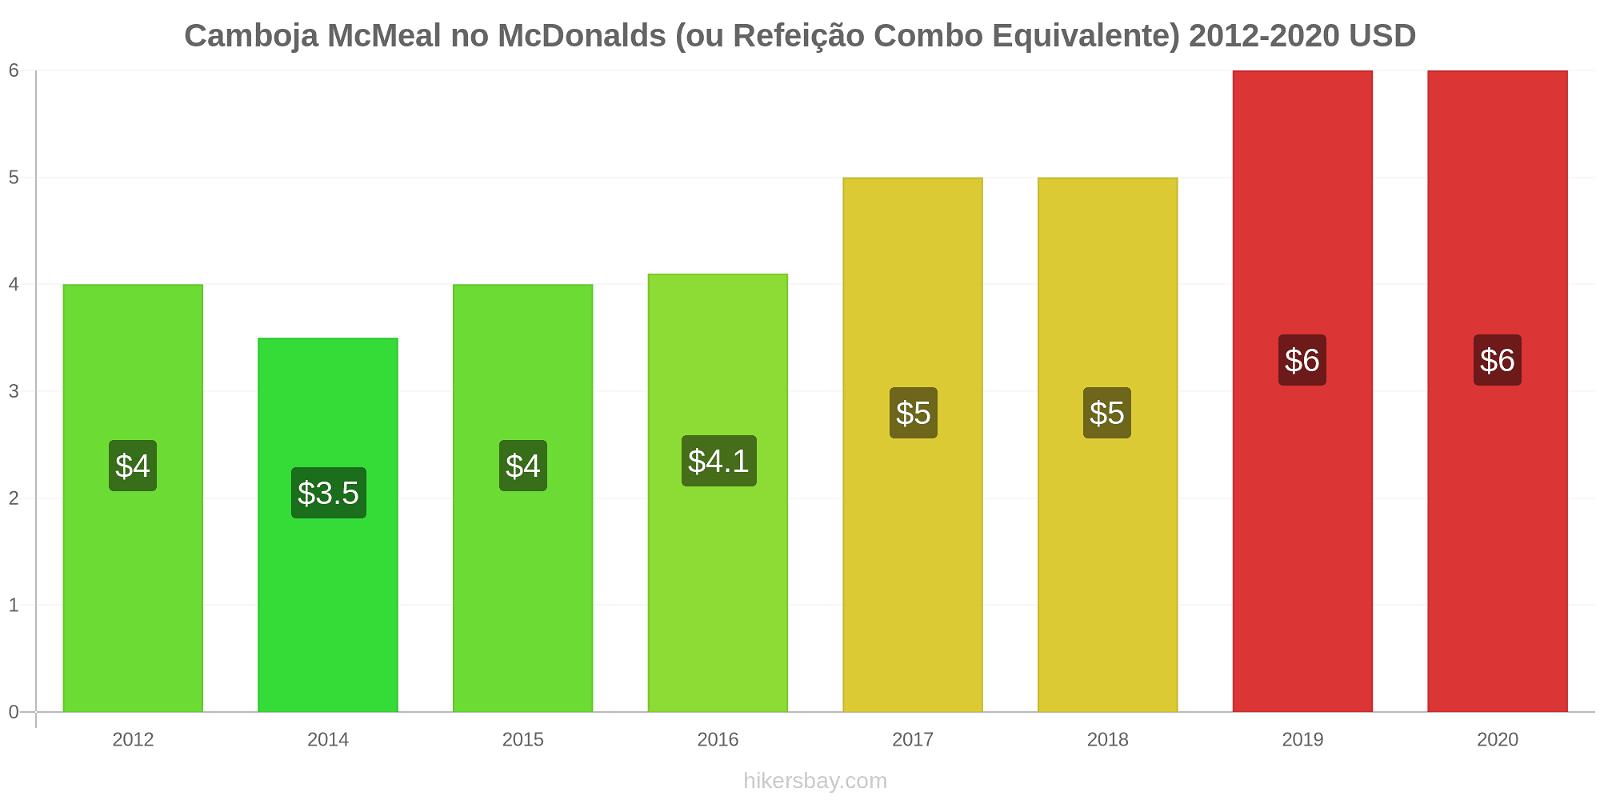 Camboja variação de preço McMeal no McDonald ' s (ou refeição Combo equivalente) hikersbay.com